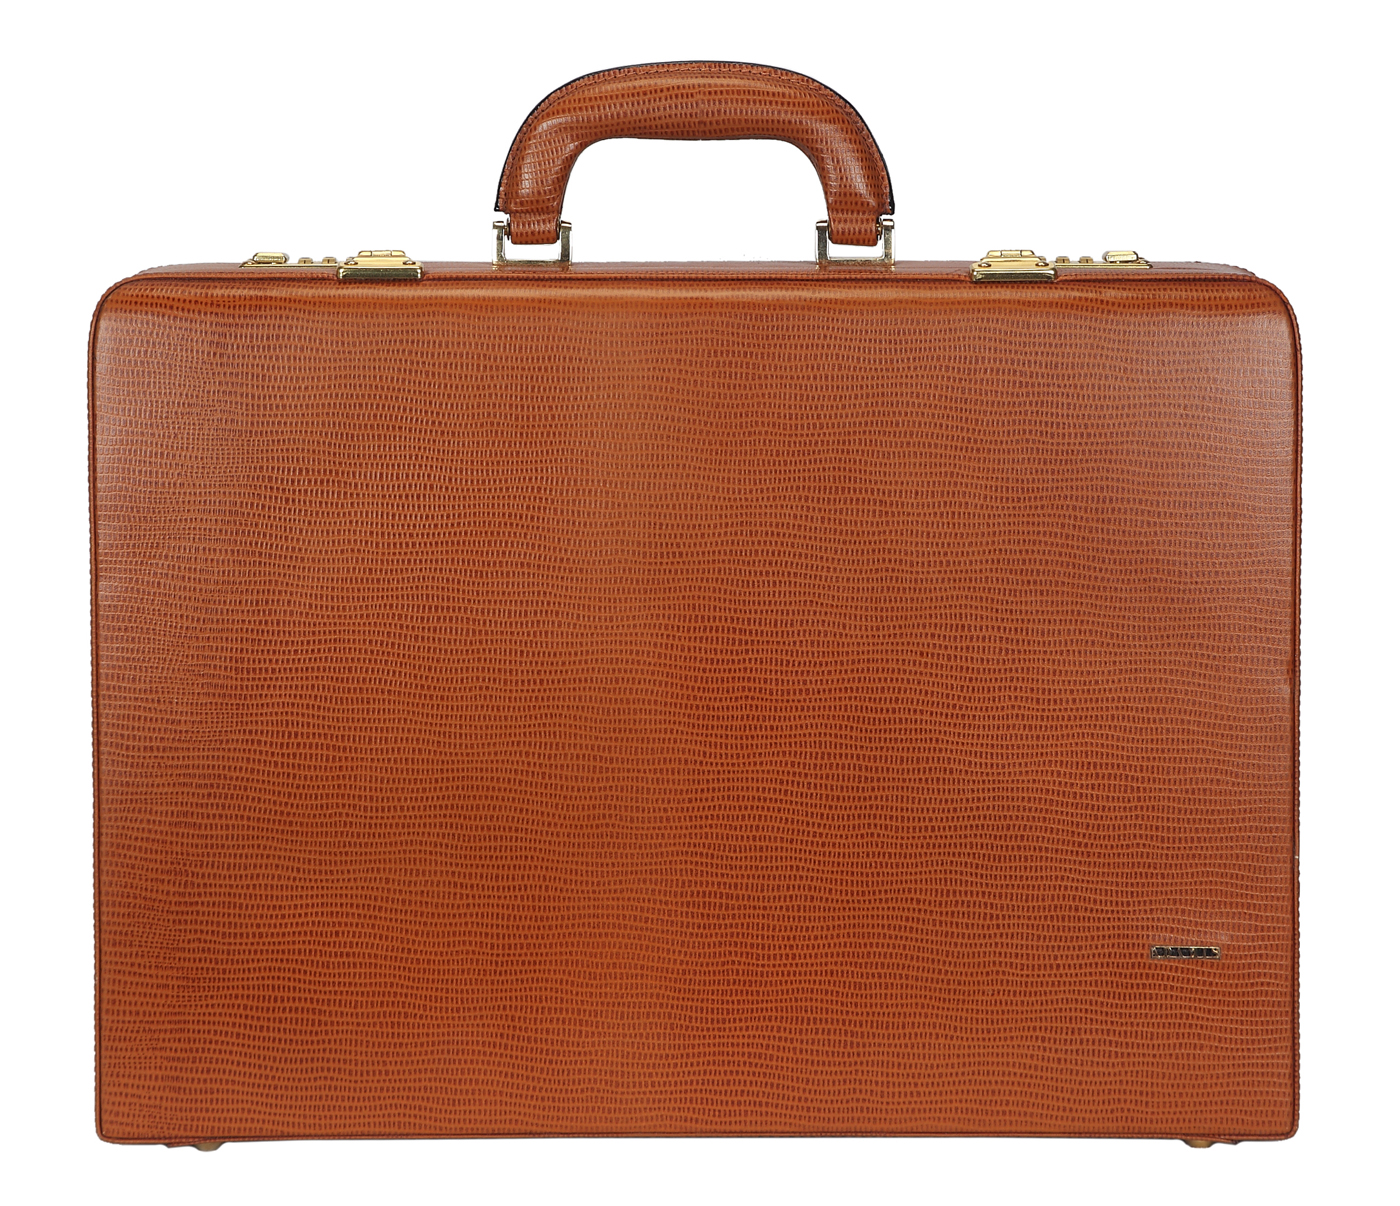  Leather Briefcase / Attache's(Tan)BC13